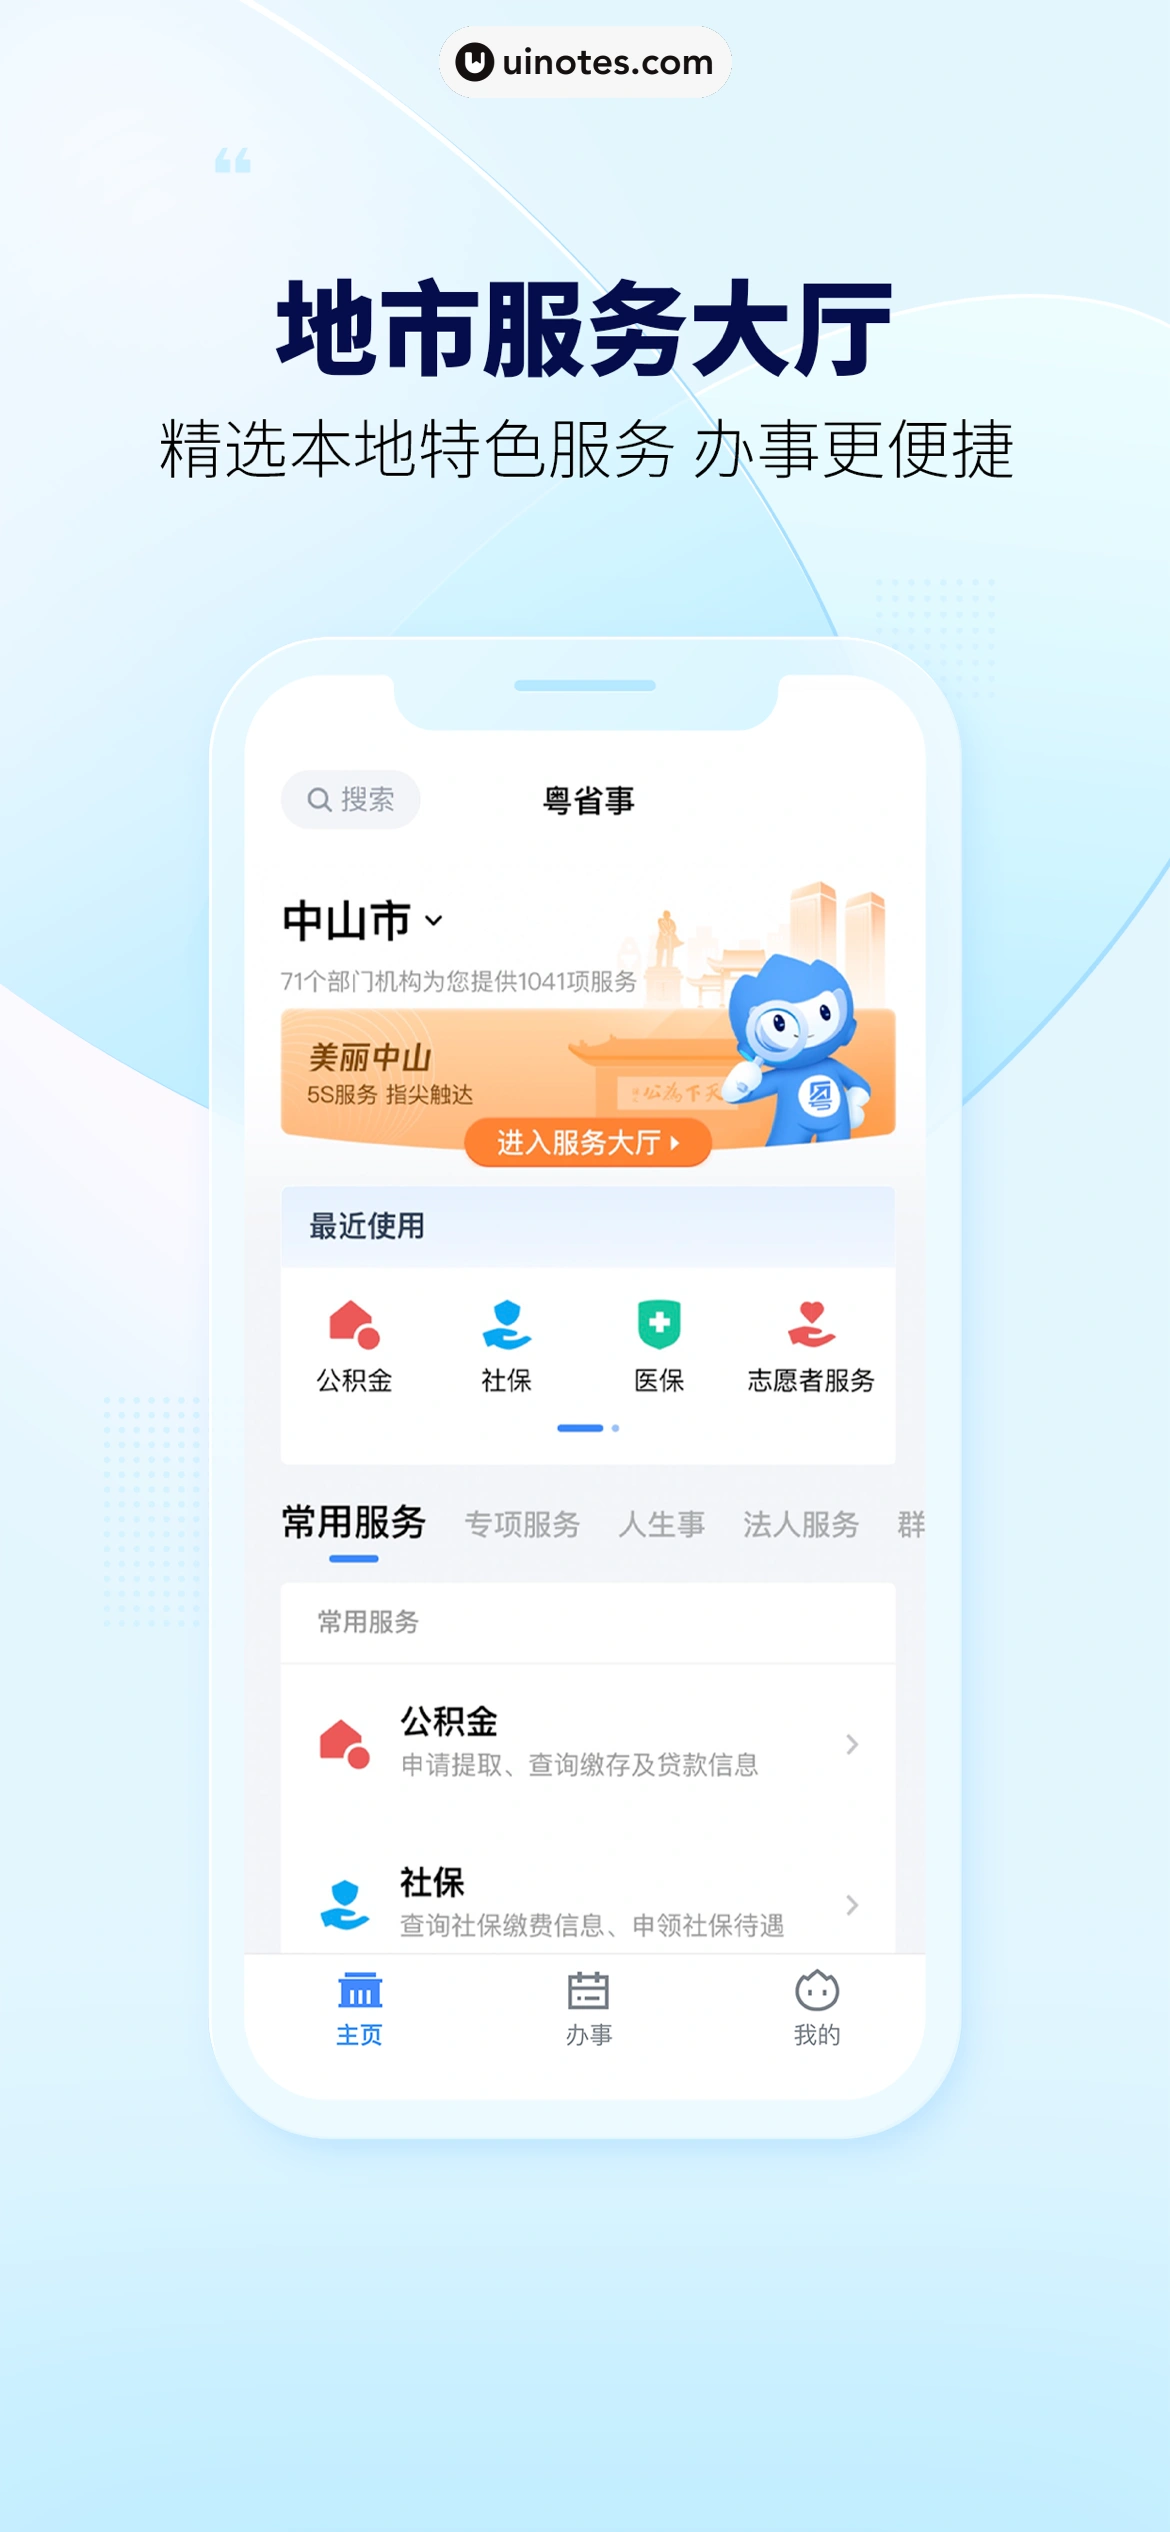 粤省事 App 截图 005 - UI Notes